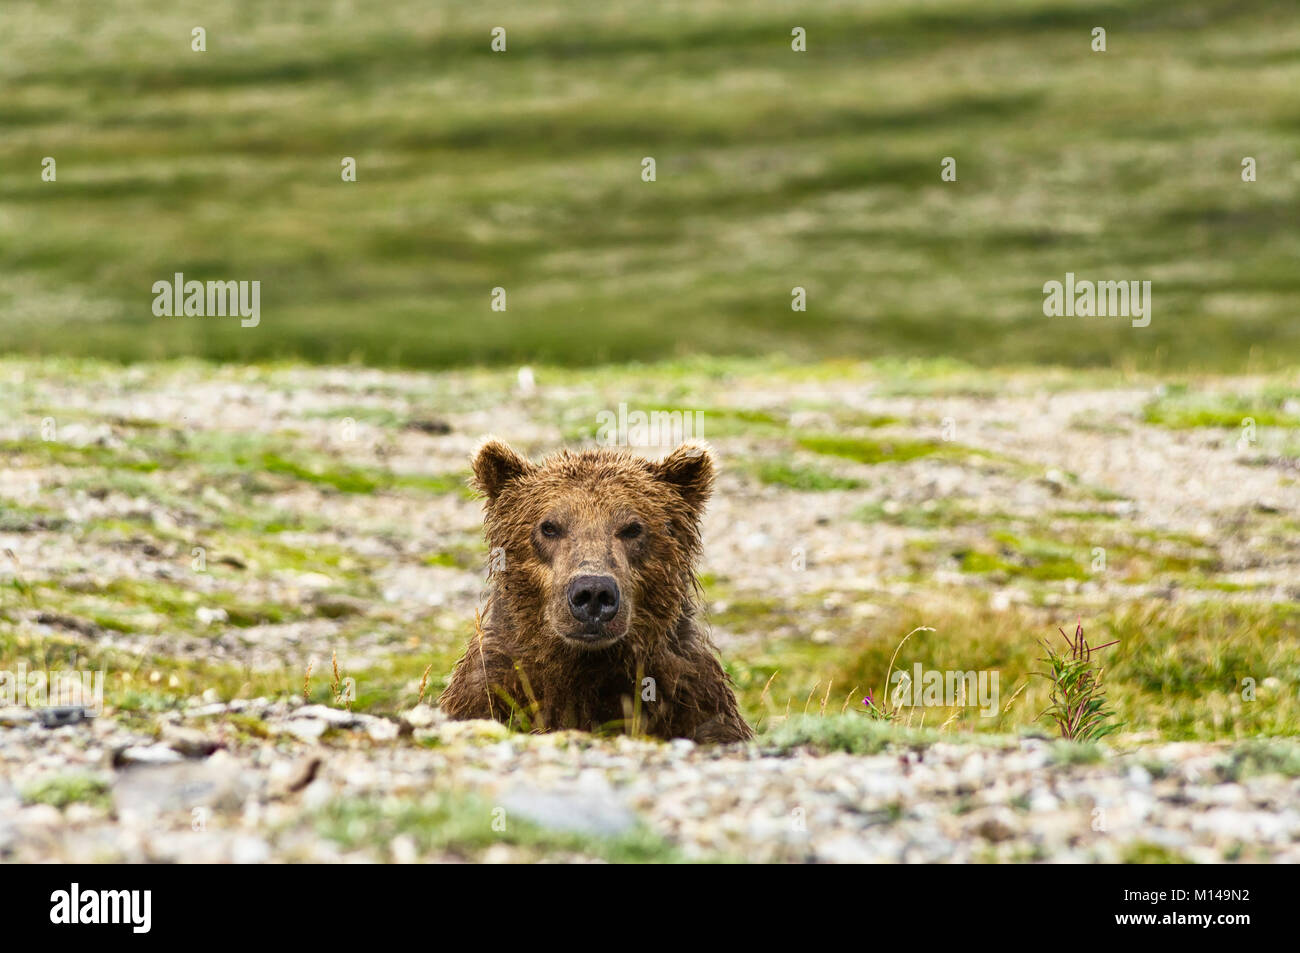 Un ours brun regardant la caméra dans la péninsule, en Alaska Katmai Banque D'Images